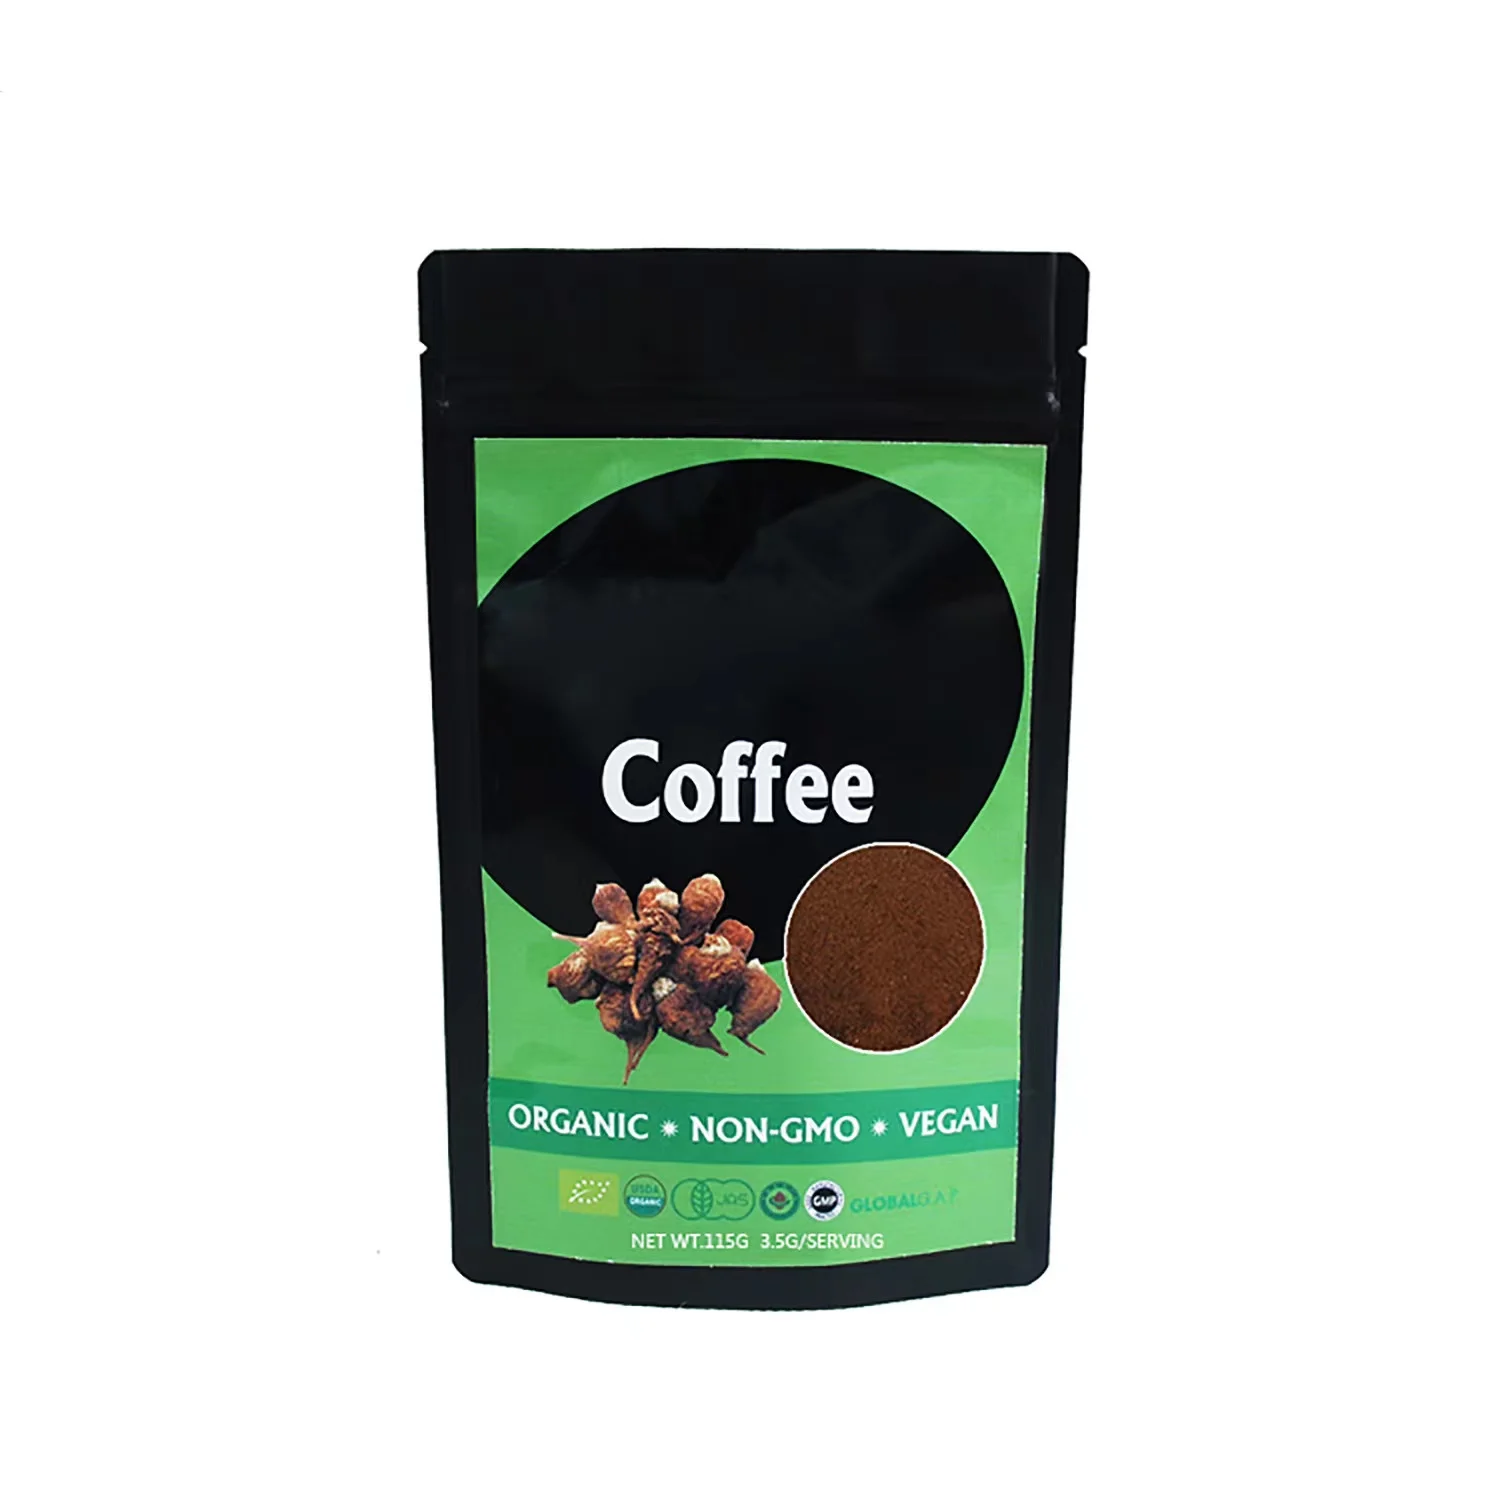 OEM индивидуальная торговая марка, Мужской Кофе Eergy, мужской кофе в почке, улучшает растворимый кофе мака для мужчин